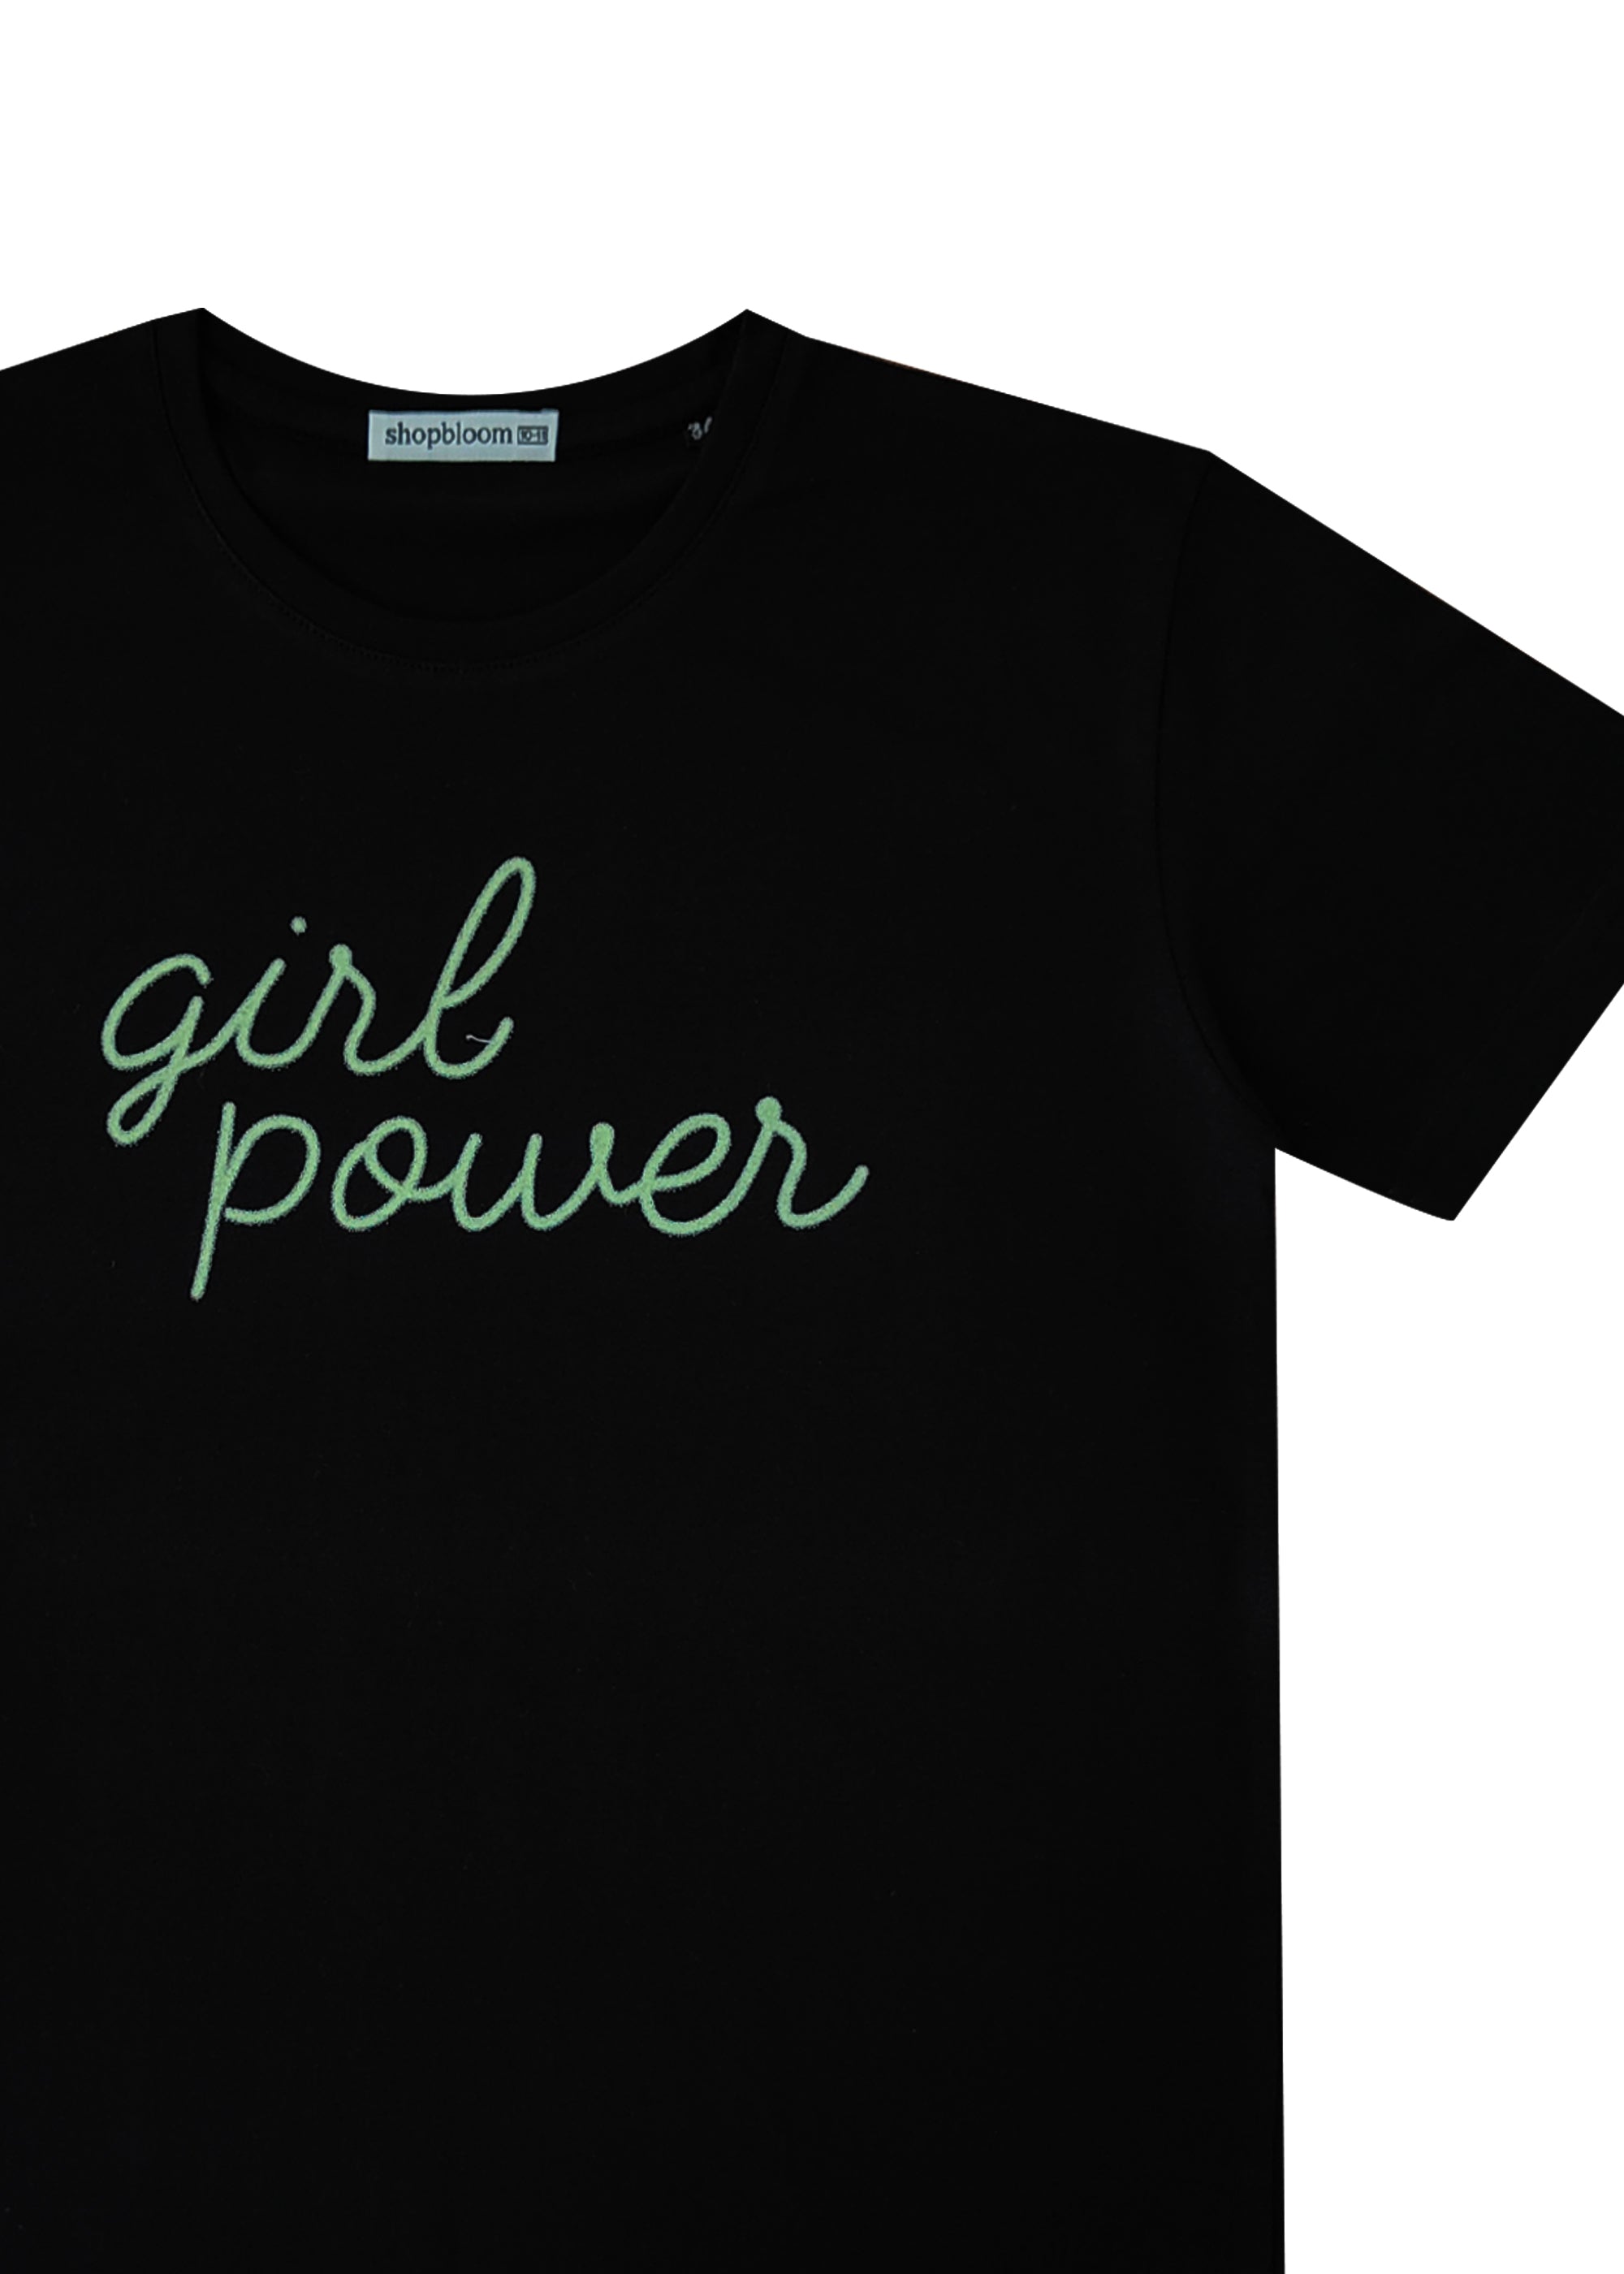 Glow in the Dark Girl Power Women's T-Shirt